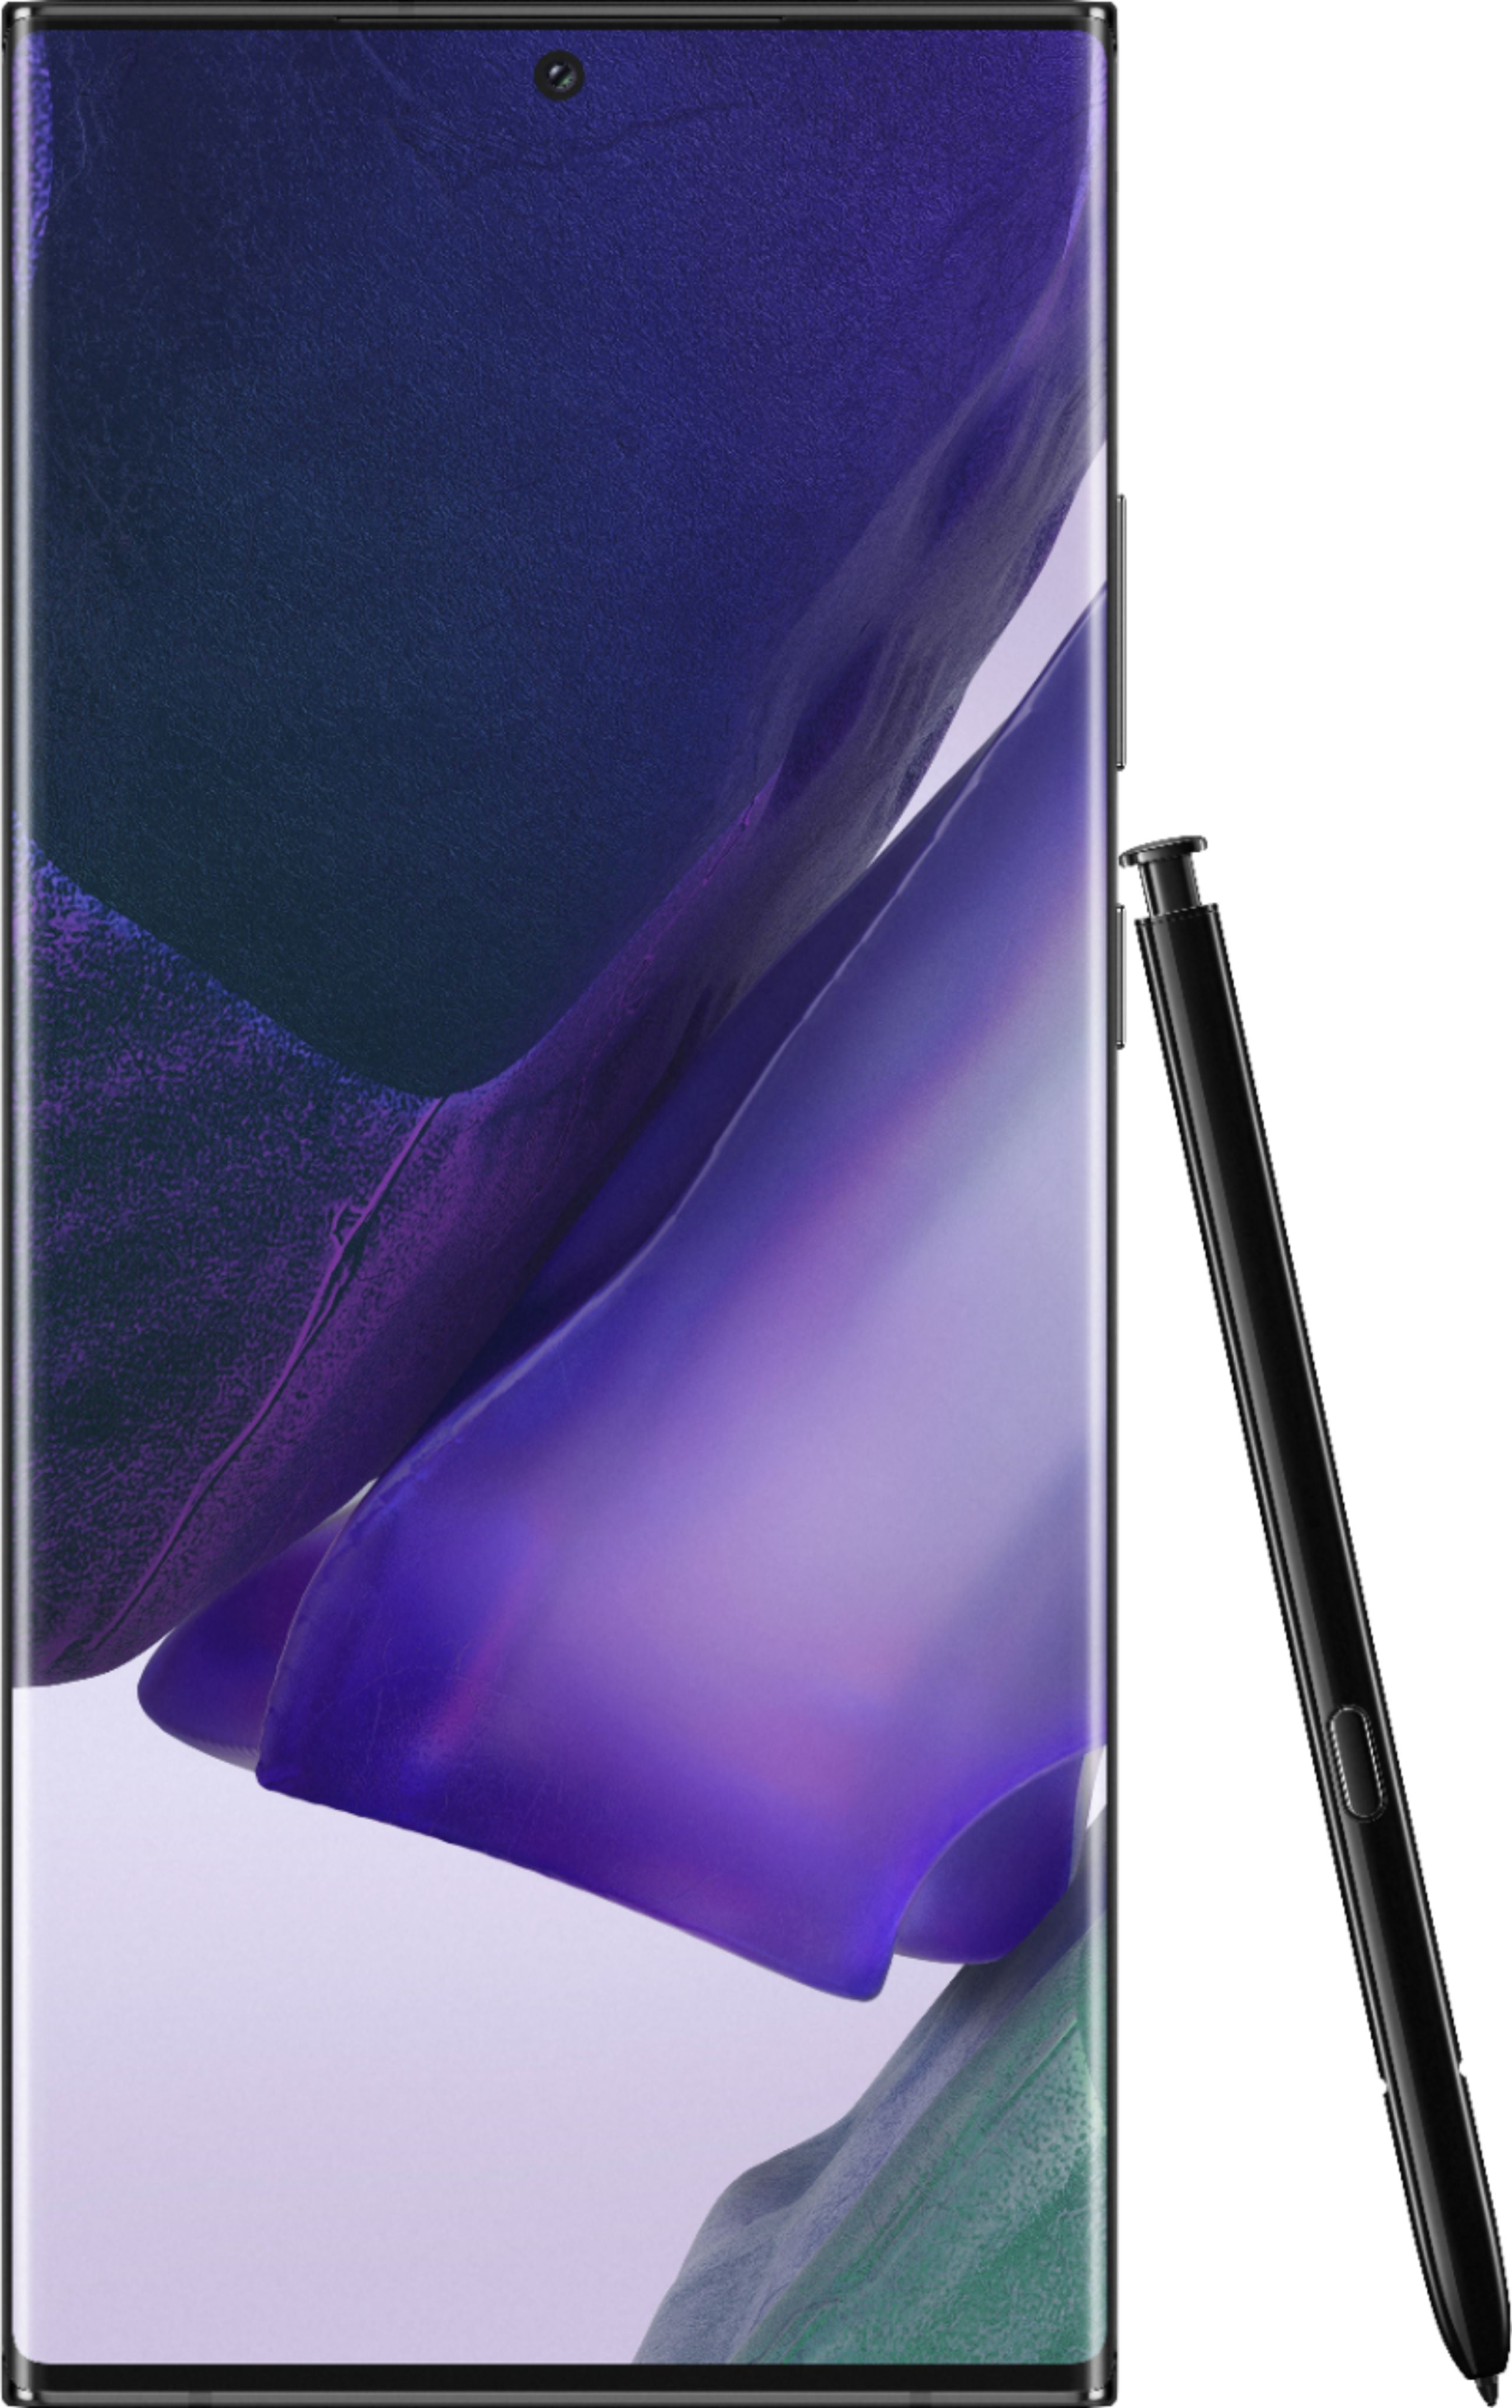 Samsung Galaxy Note 10+, 256gb, Aura Black - Fully Unlocked (Renewed)